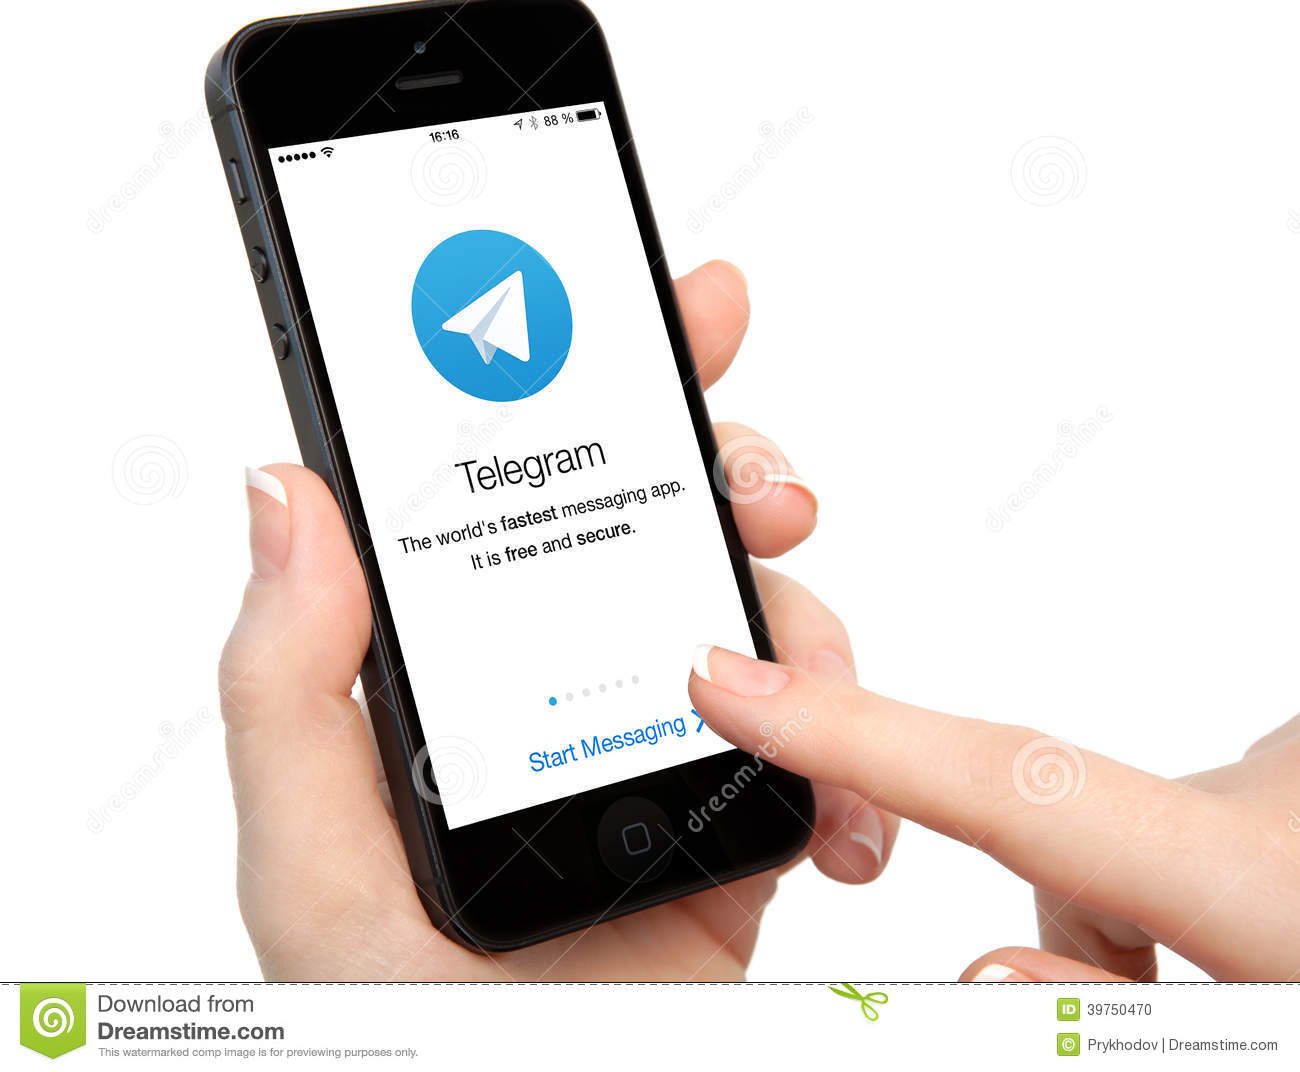 Il 28 ottobre con il nuovo aggiornamento di Telegram per iPhone ed Apple Watch